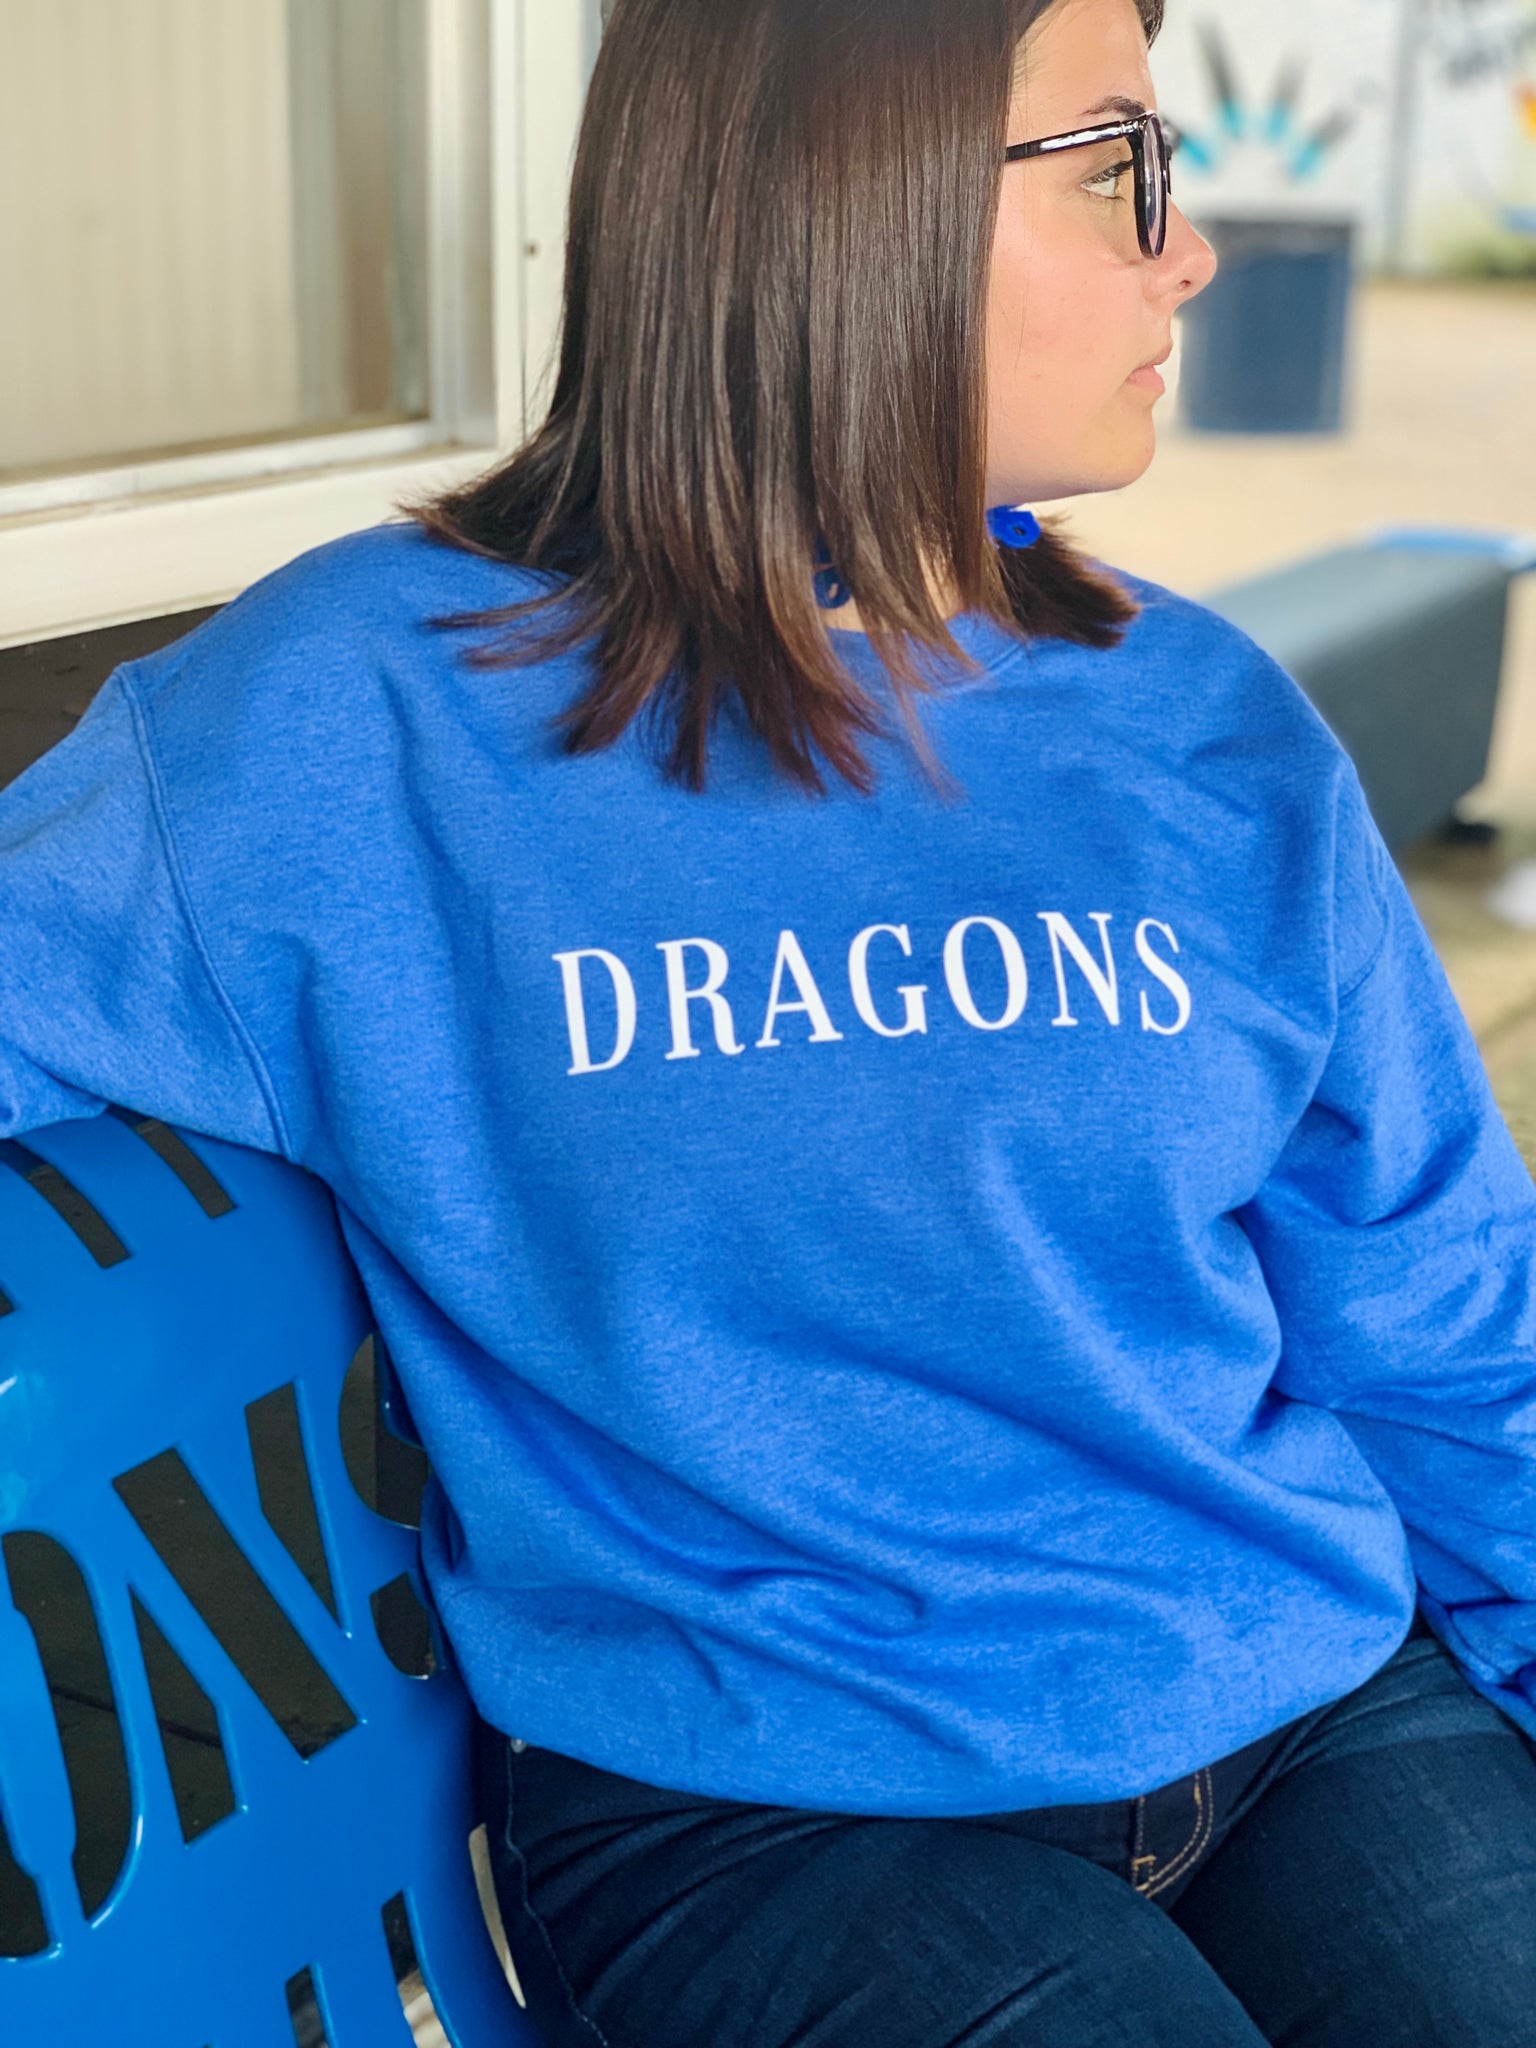 Dragons Crew Neck Sweater